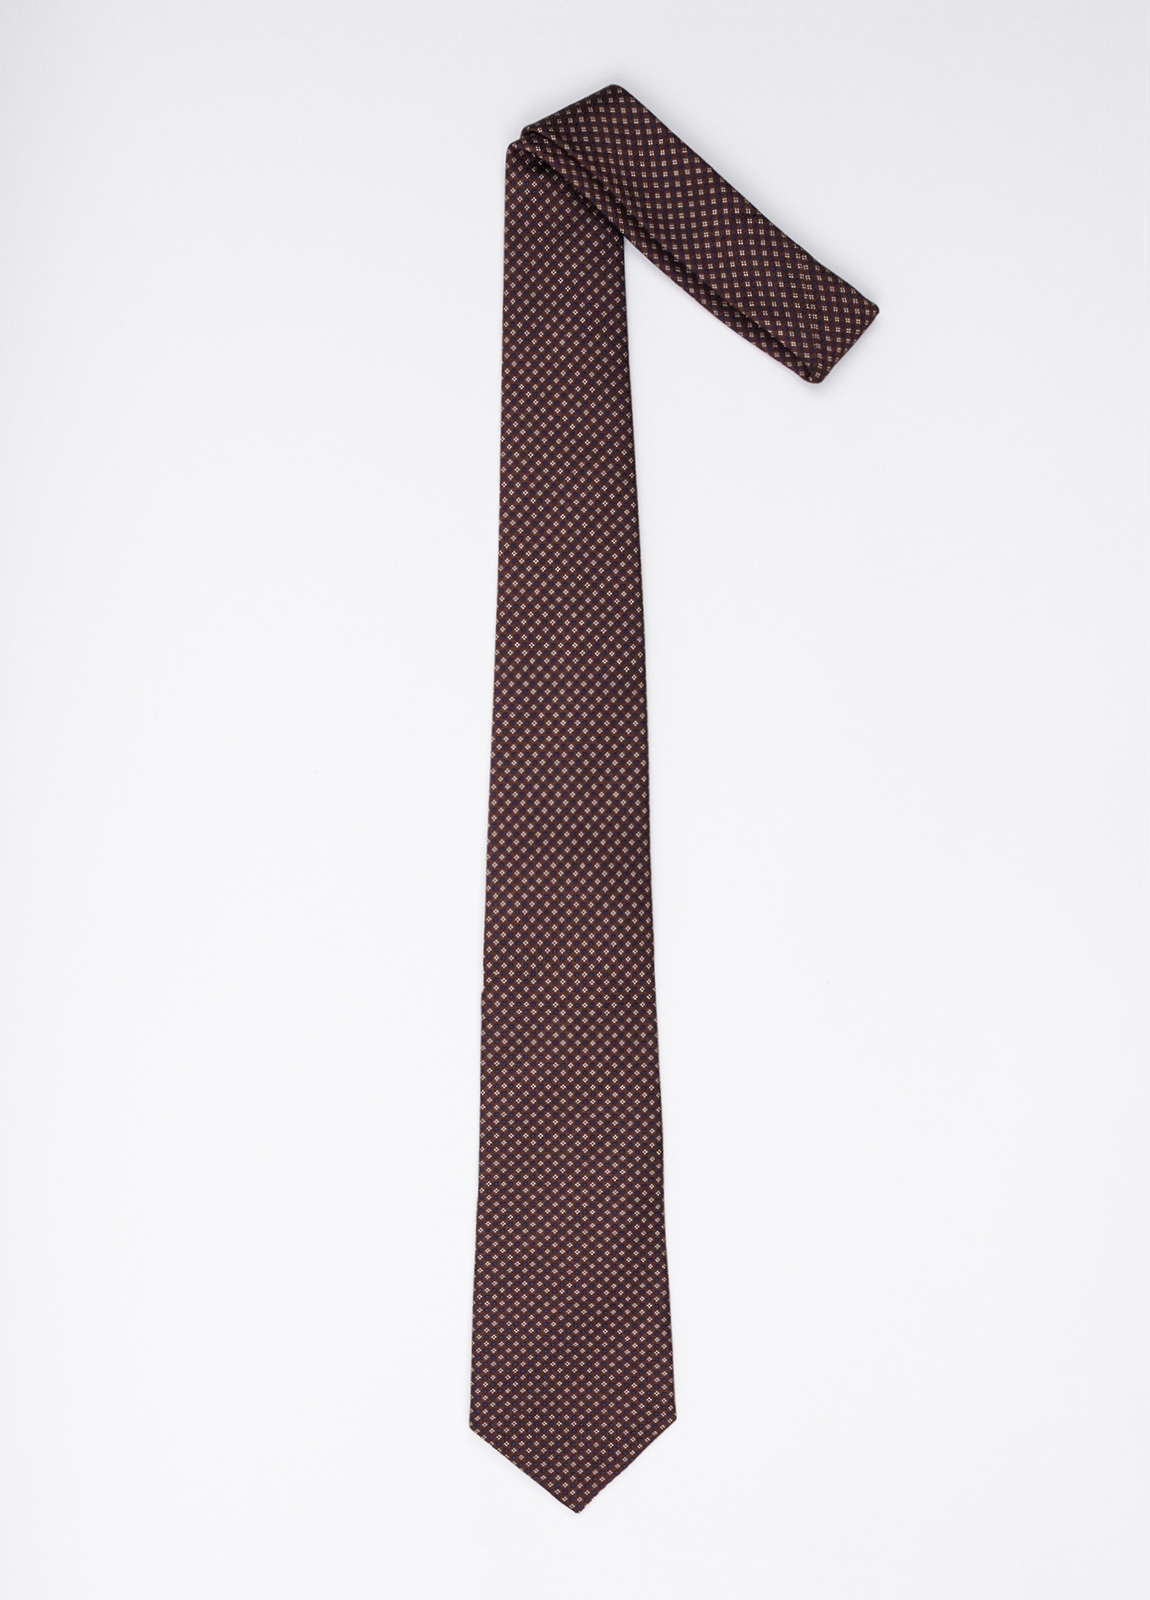 Corbata FUREST COLECCIÓN color marrón con dibujo blanco - Ítem1